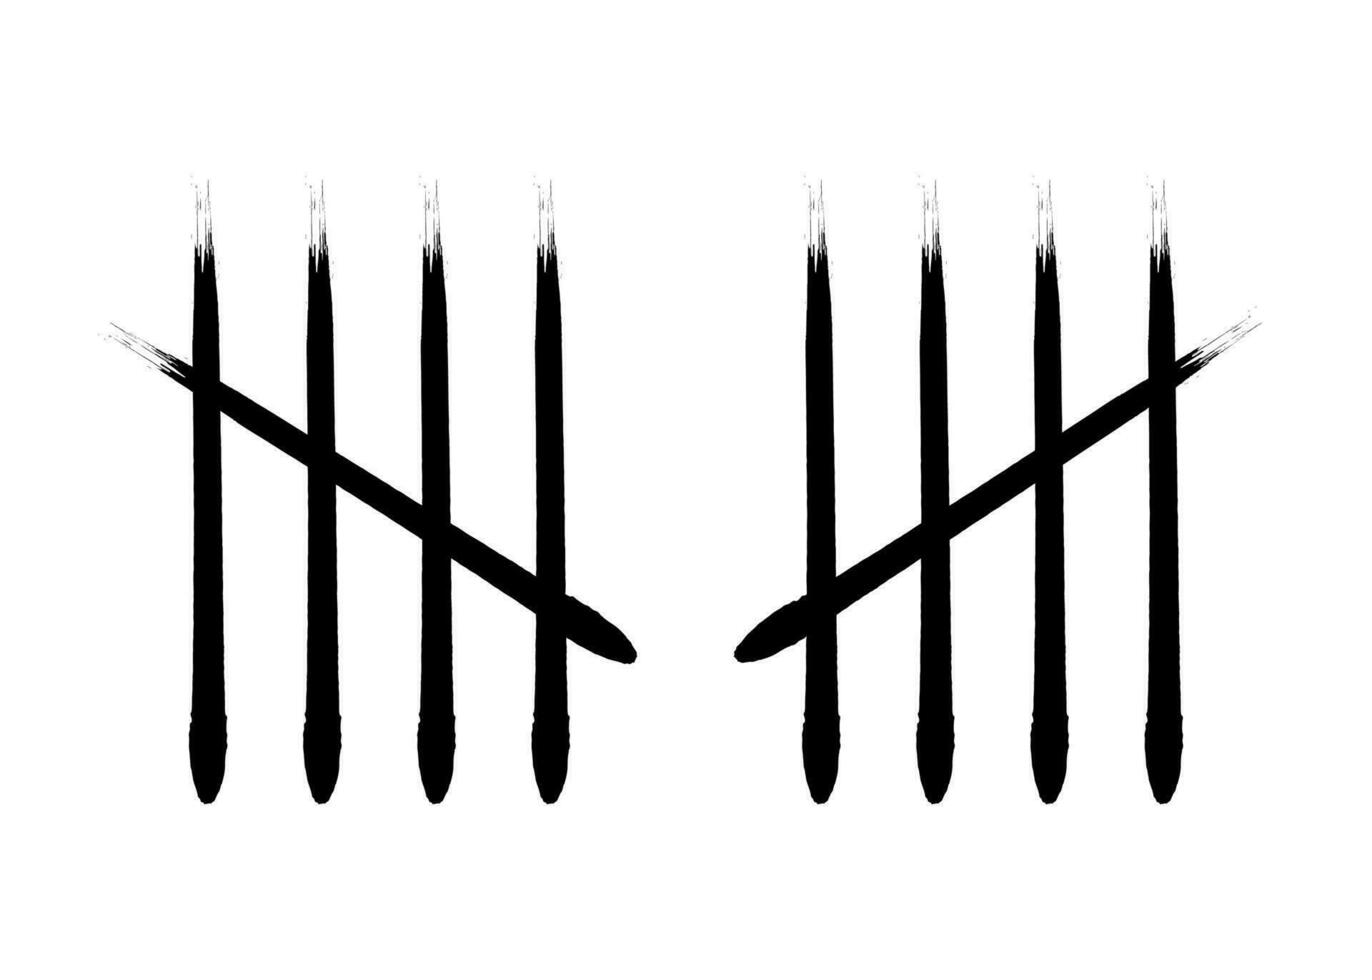 Holzkohle Feder übereinstimmen Markierungen vier Stöcke gekreuzt Vektor Illustration.